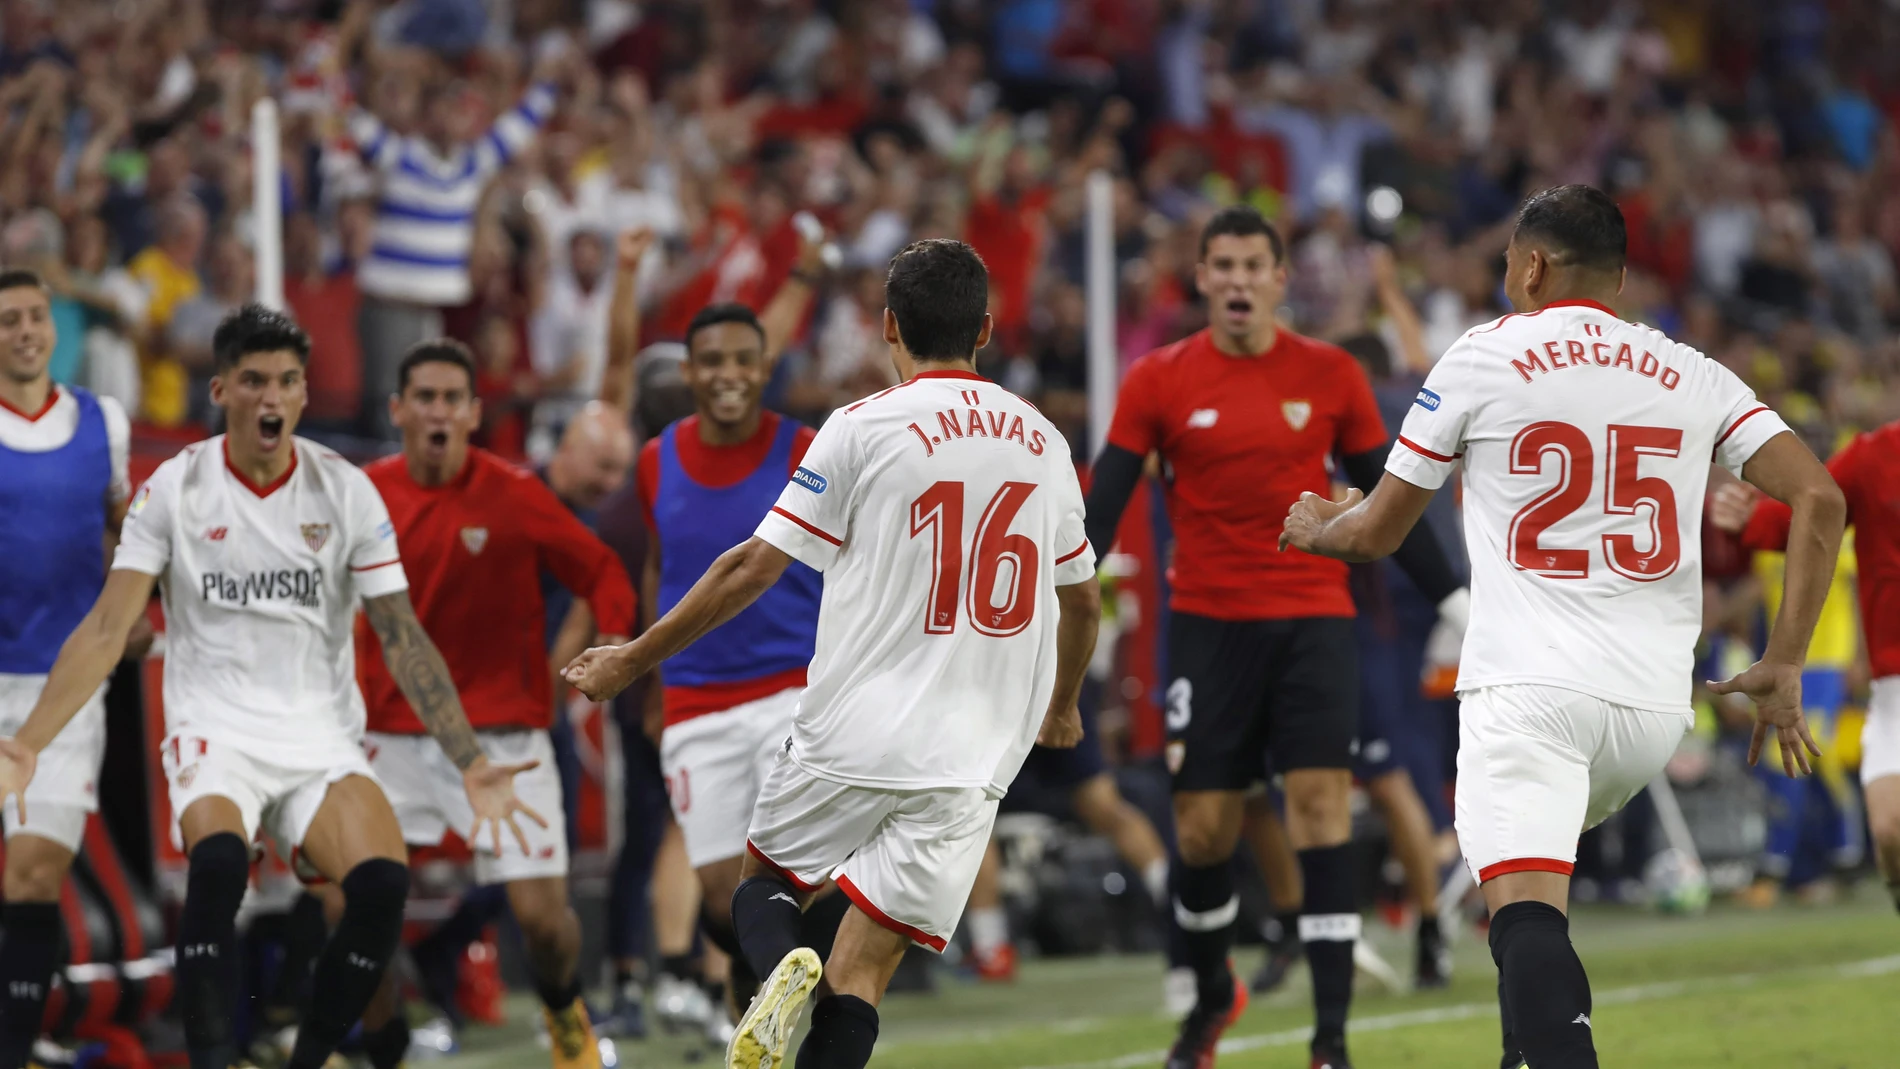 Jesús Navas celebra el gol con sus compañeros del Sevilla